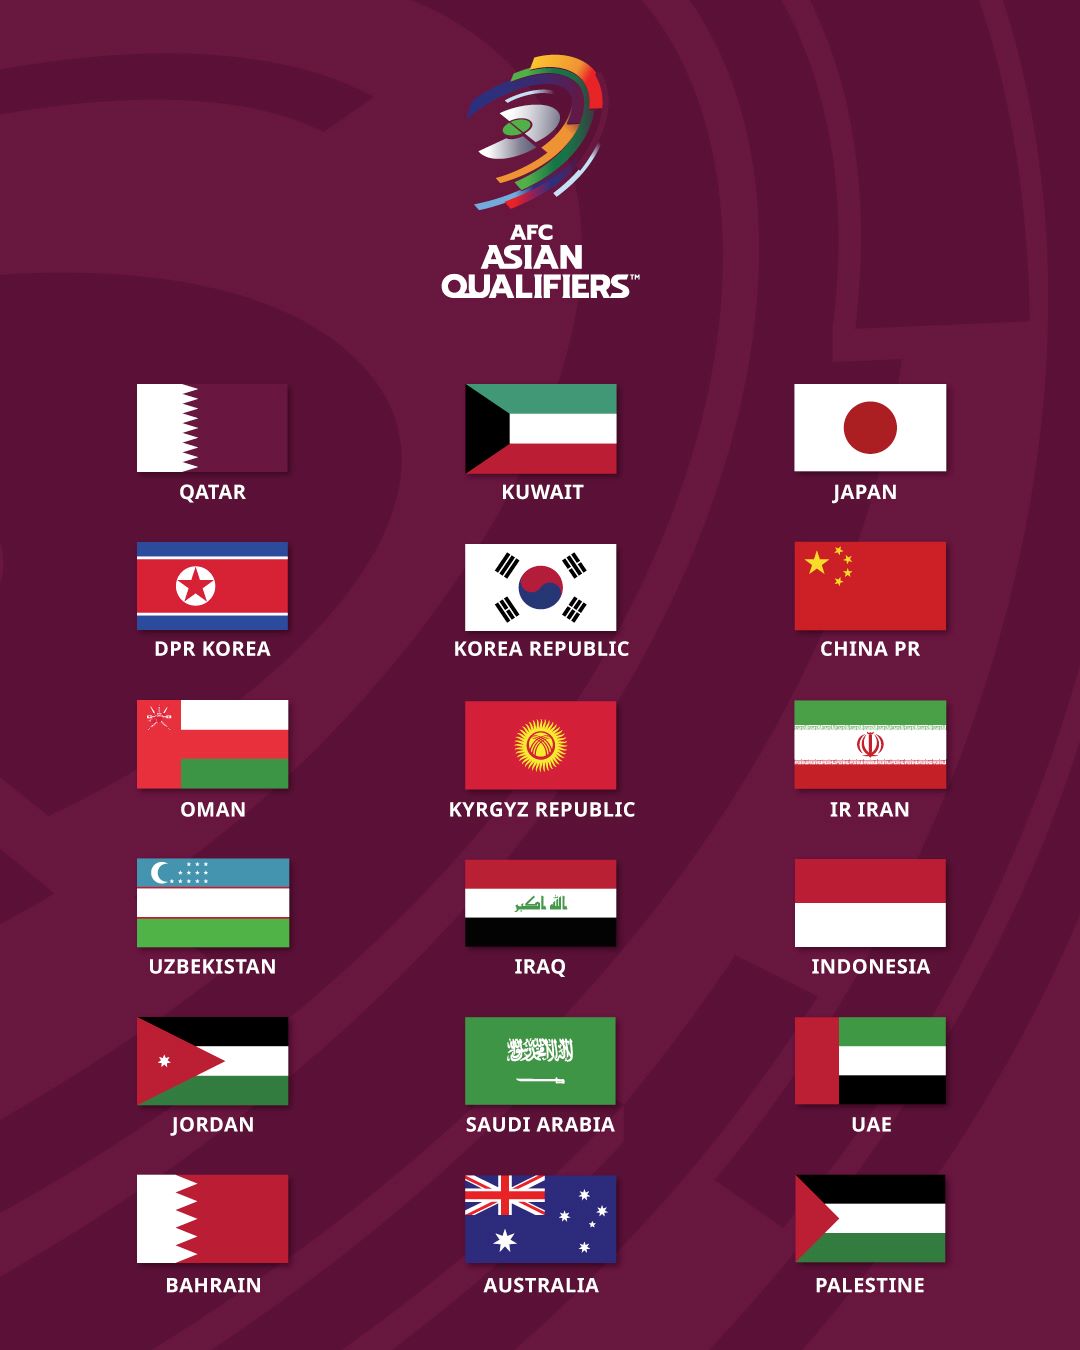 Danh sách 18 đội châu Á sẽ tranh vé dự World Cup 2026, thông qua vòng loại 3, 4 và play-off. Ảnh: AFC